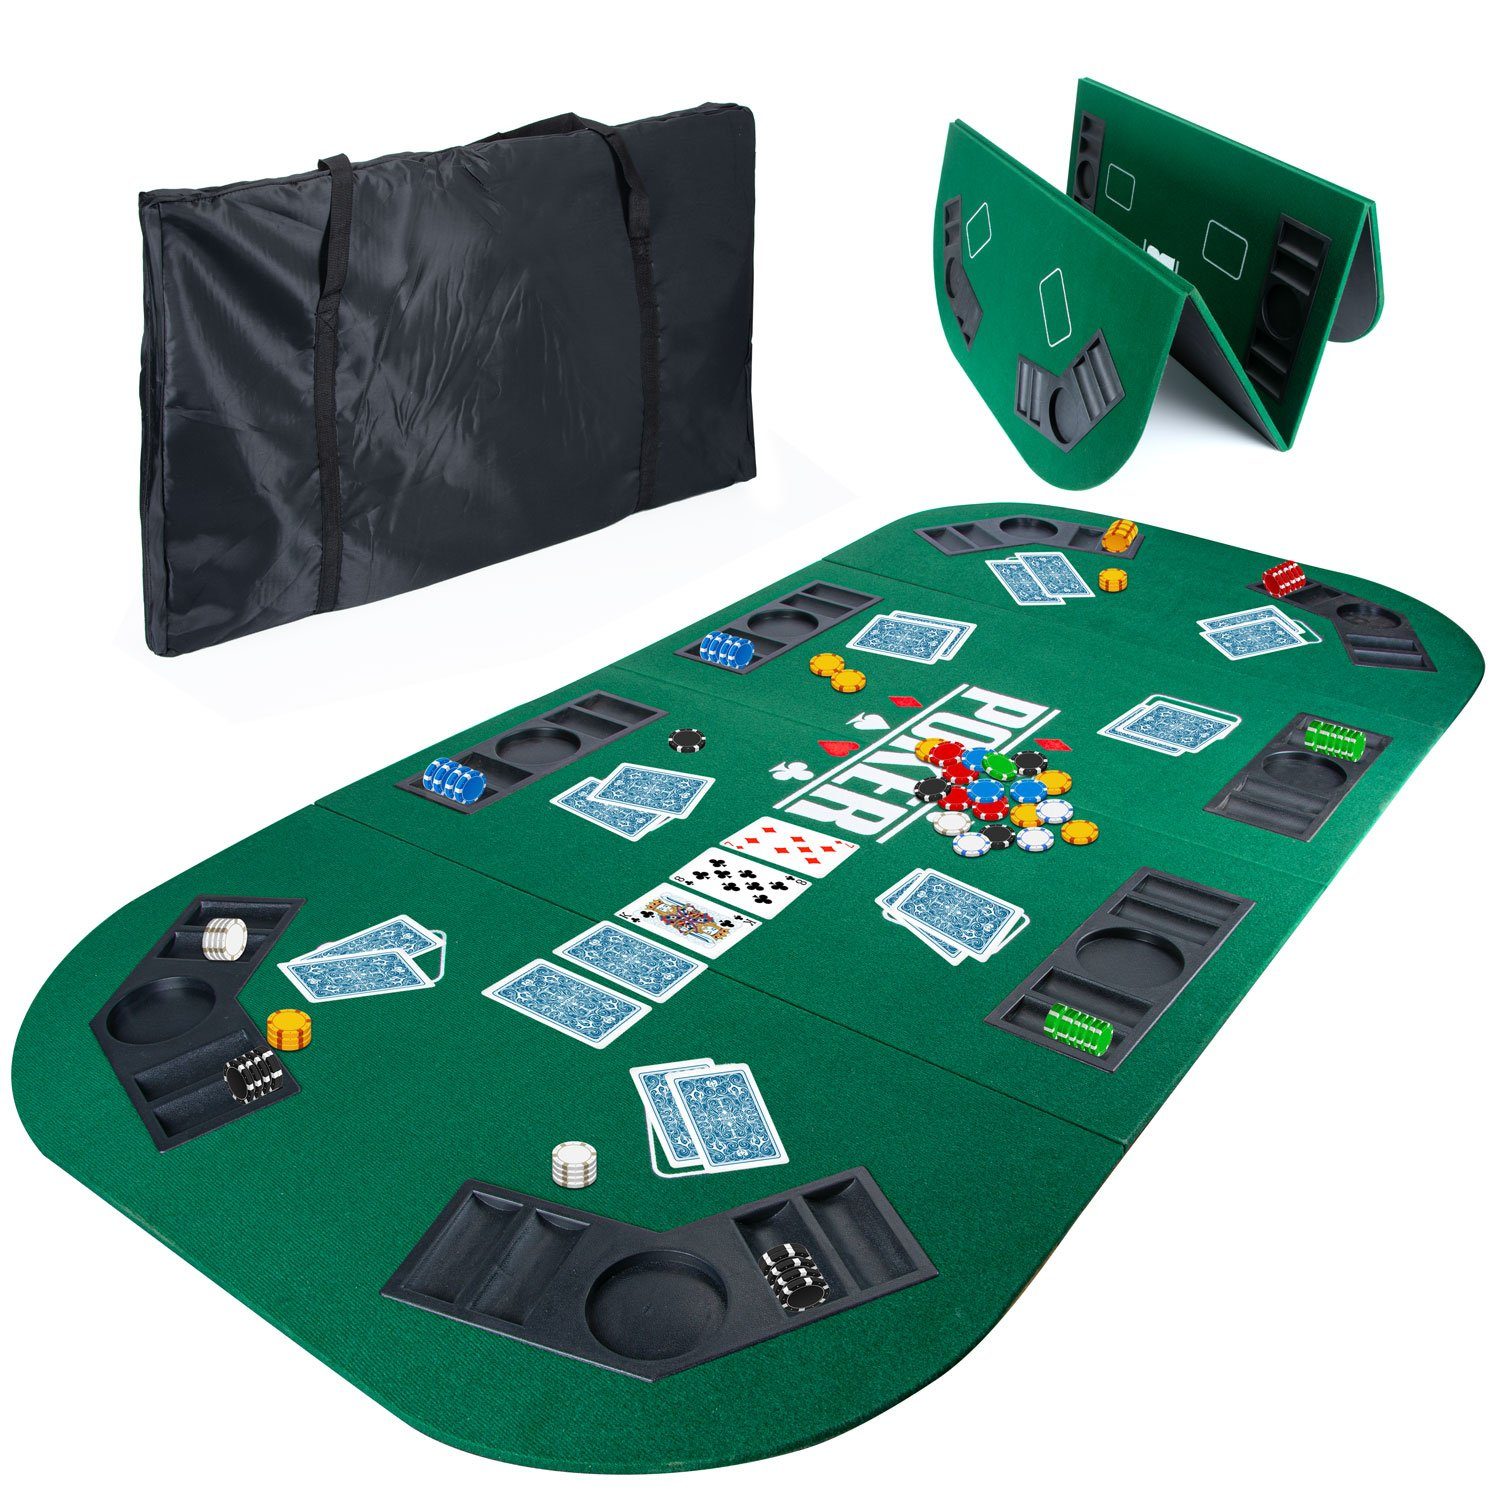 https://i.otto.de/i/otto/9067f5c3-1215-45f1-b3fb-760591bfbf20/goods-gadgets-spiel-poker-tisch-auflage-faltbare-poker-spielfeld-unterlage-casinotisch.jpg?$formatz$